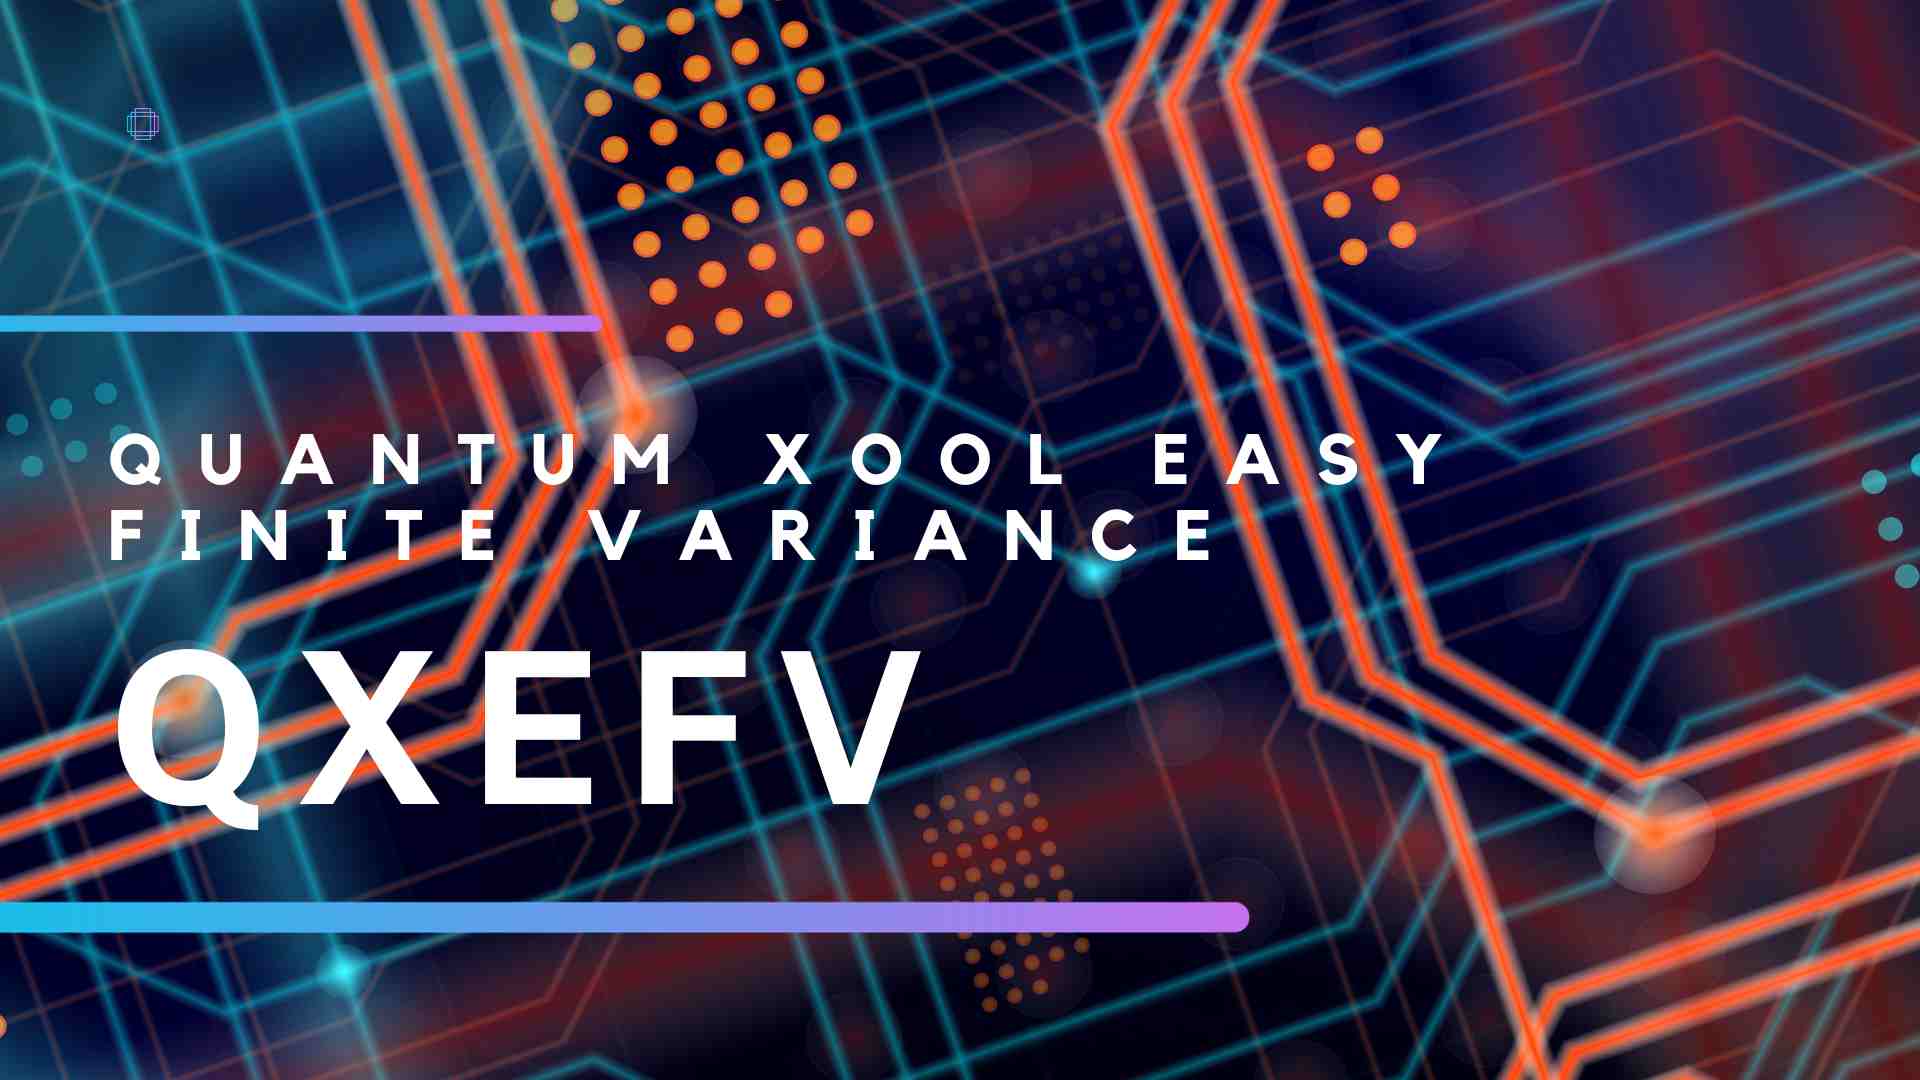 Qxefv – Quantum Xool Easy Finite Variance